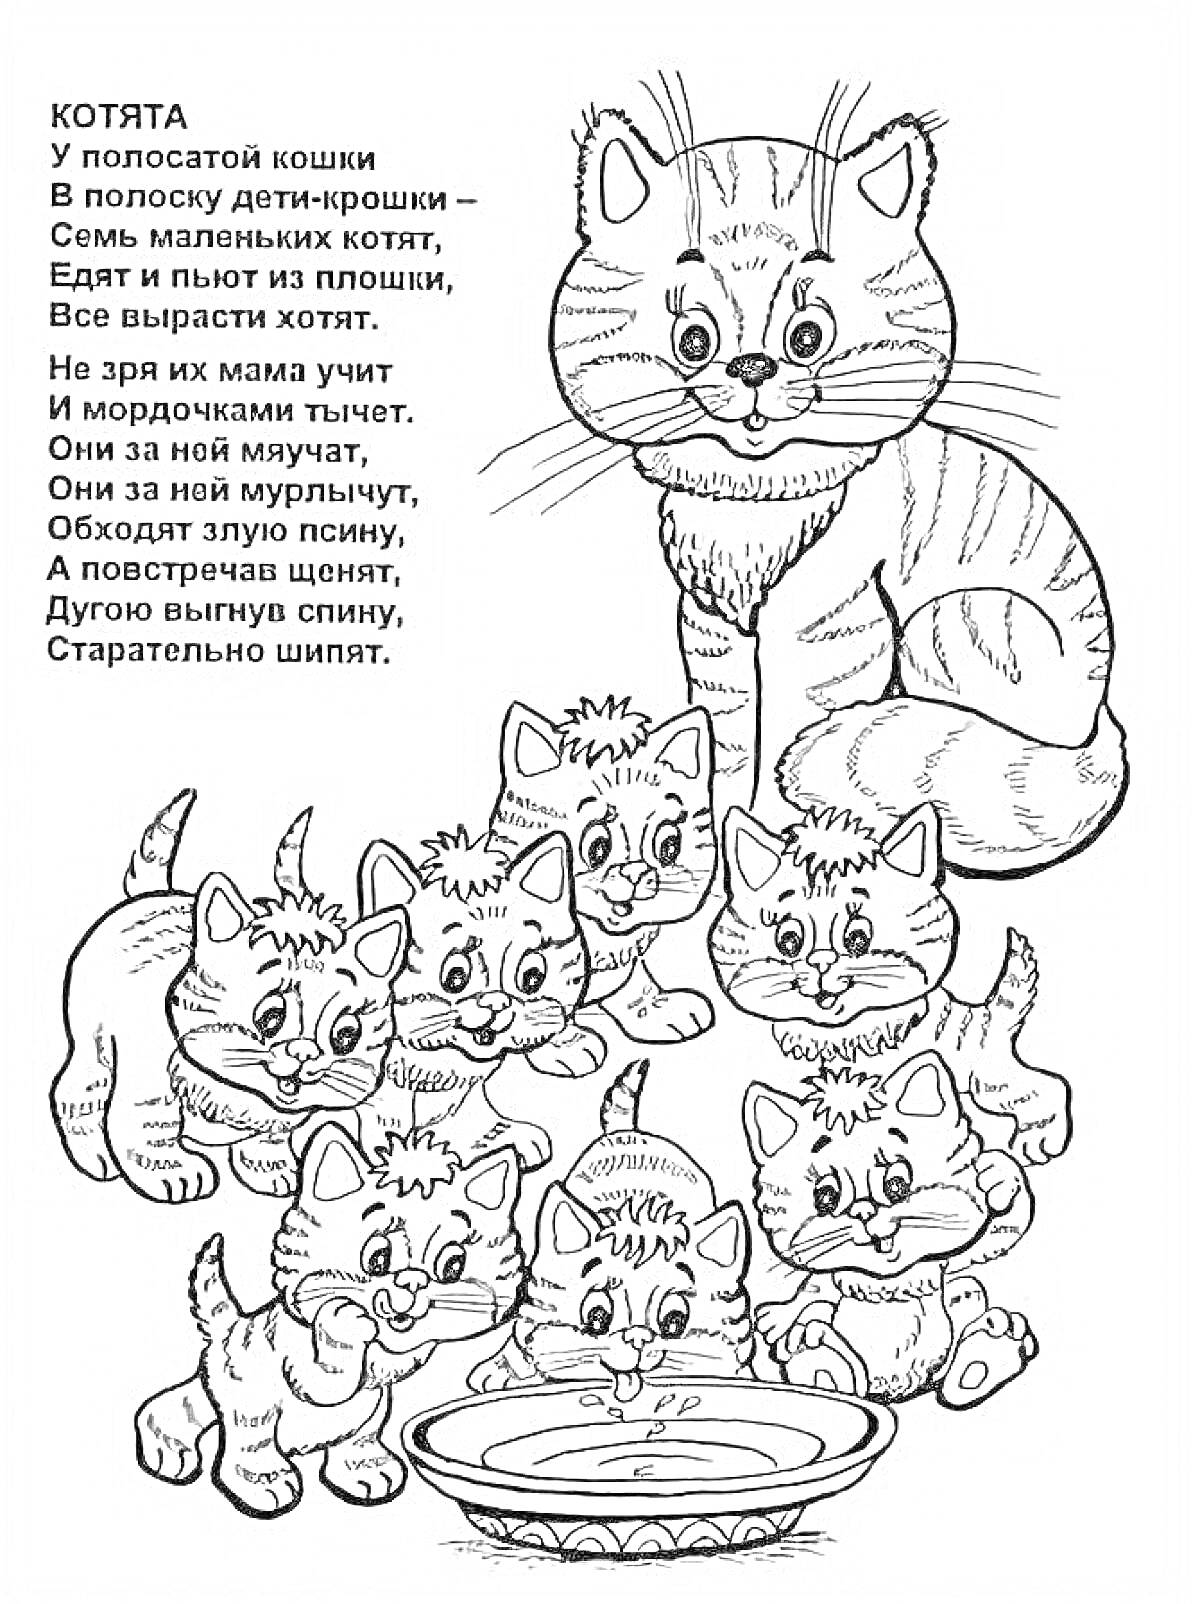 Раскраска Котята. Большая взрослая кошка и семь маленьких котят. Стихотворение С. Михалкова 